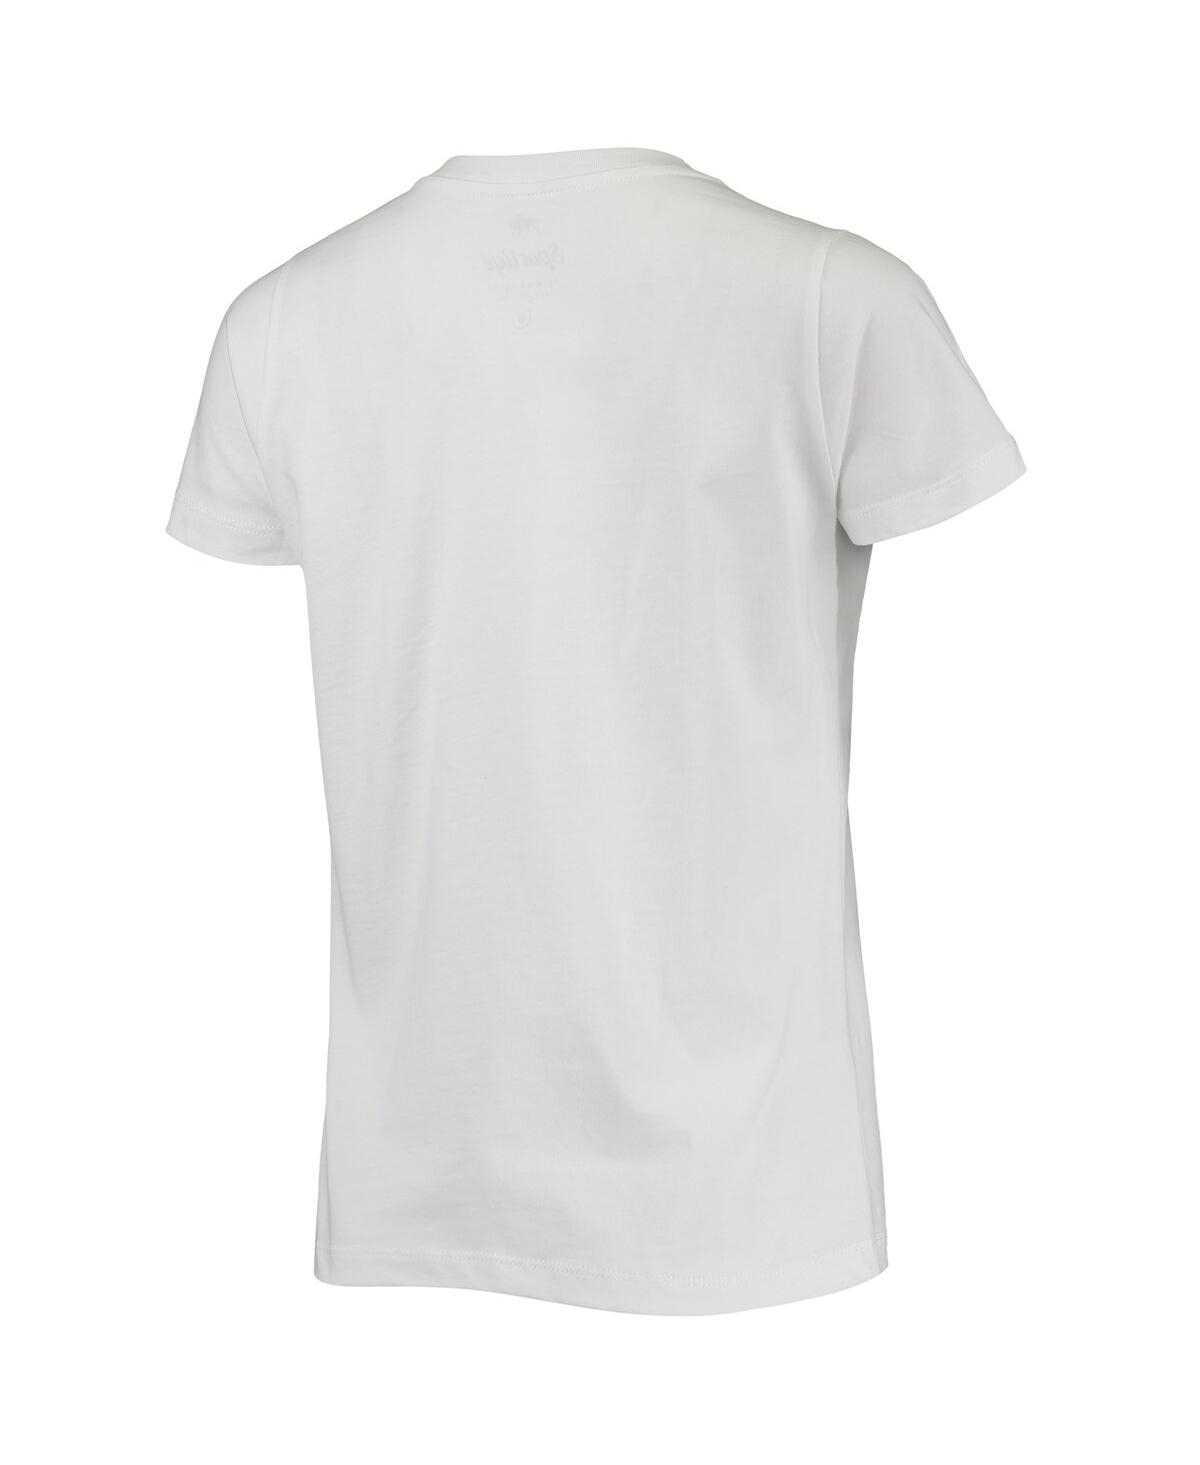 Shop Sportiqe Women's  White Washington Wizards Cabo T-shirt